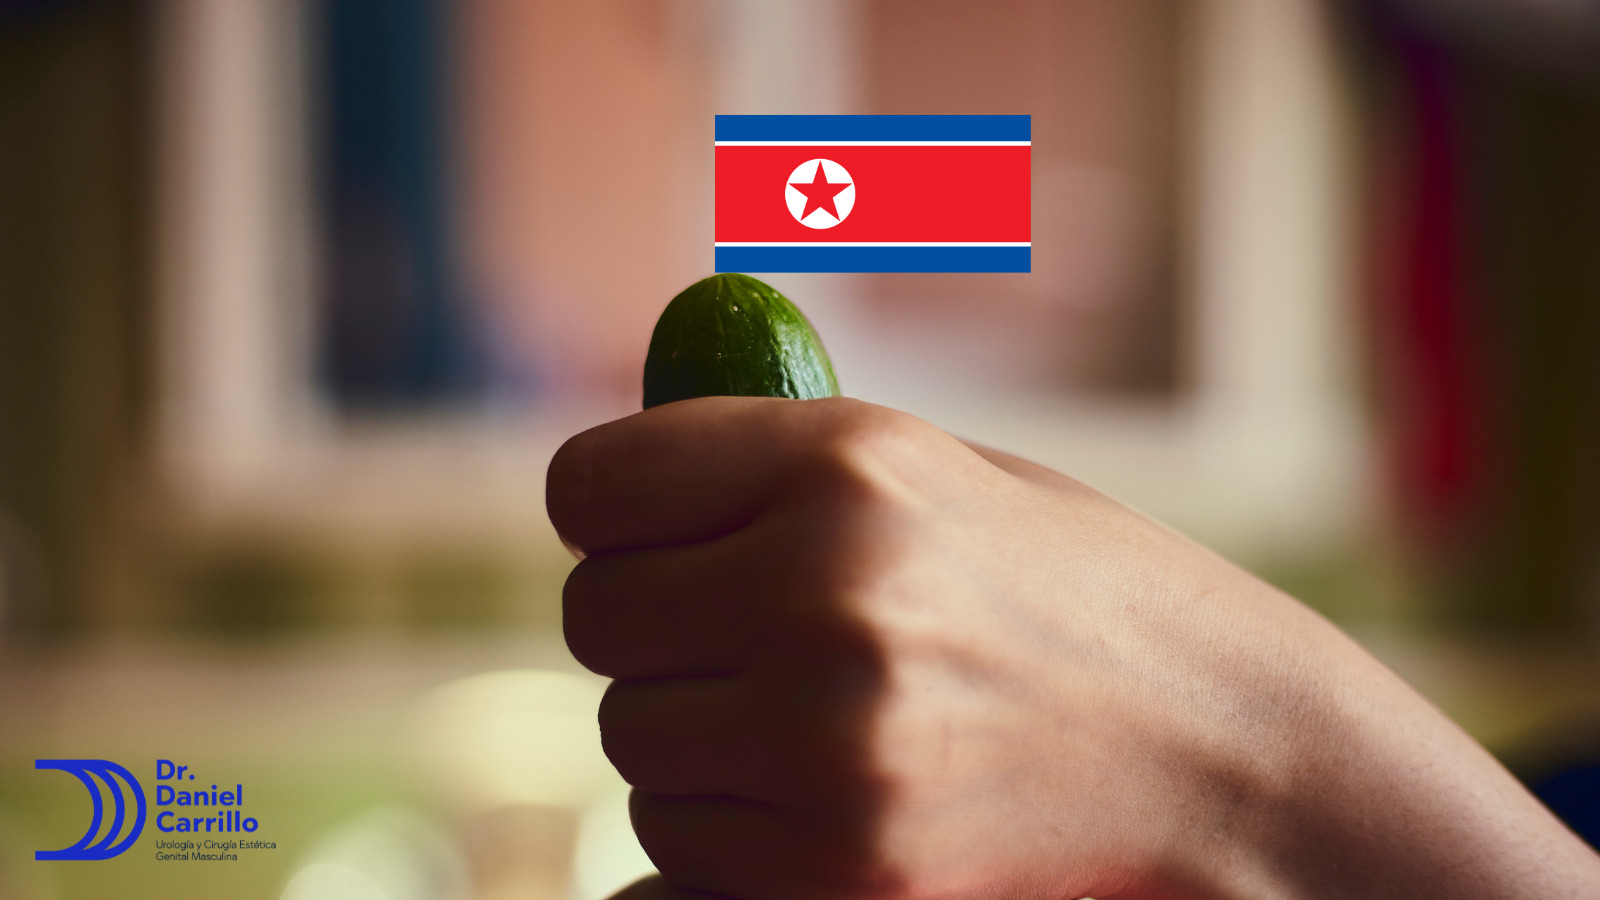 Corea del norte es el país con el pene más chico con 9.6 cm